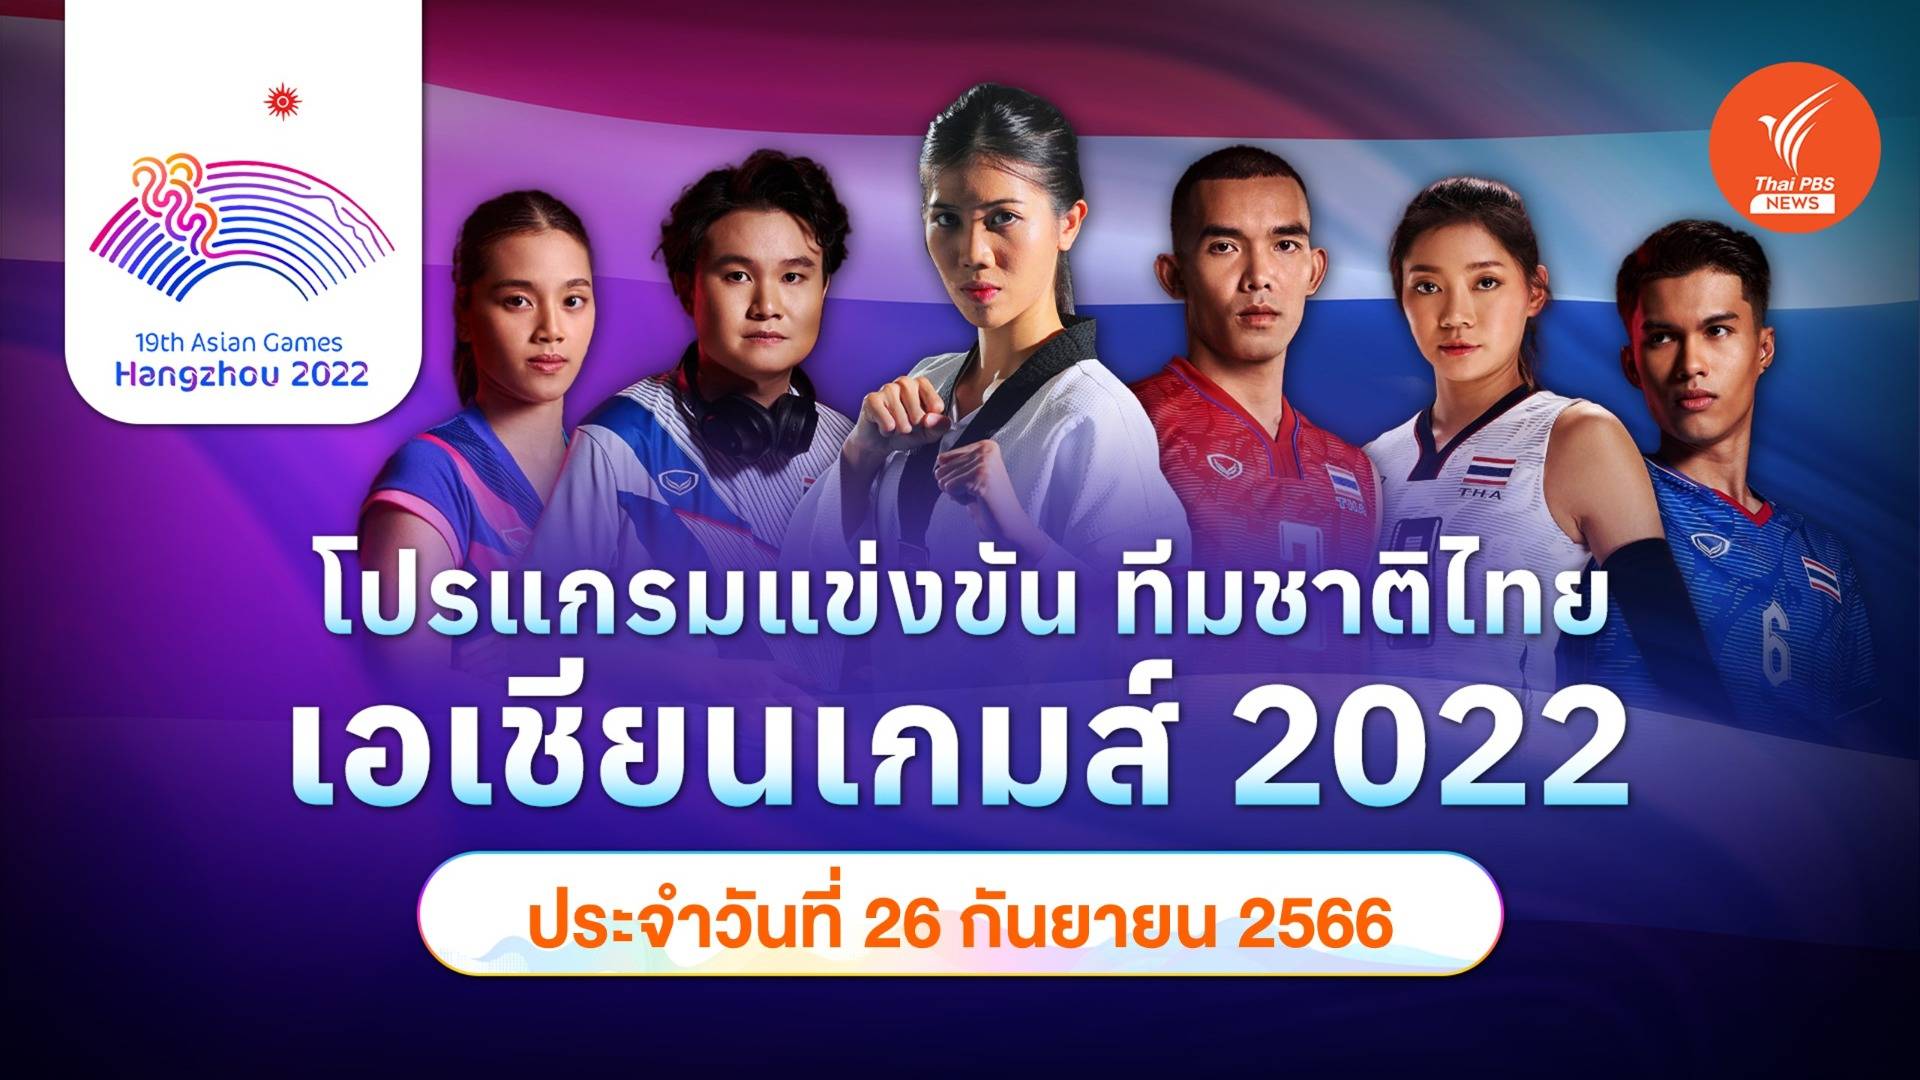 โปรแกรมการแข่งขัน เอเชียนเกมส์ 2022 ทัพนักกีฬาไทย วันที่ 26 ก.ย.66 